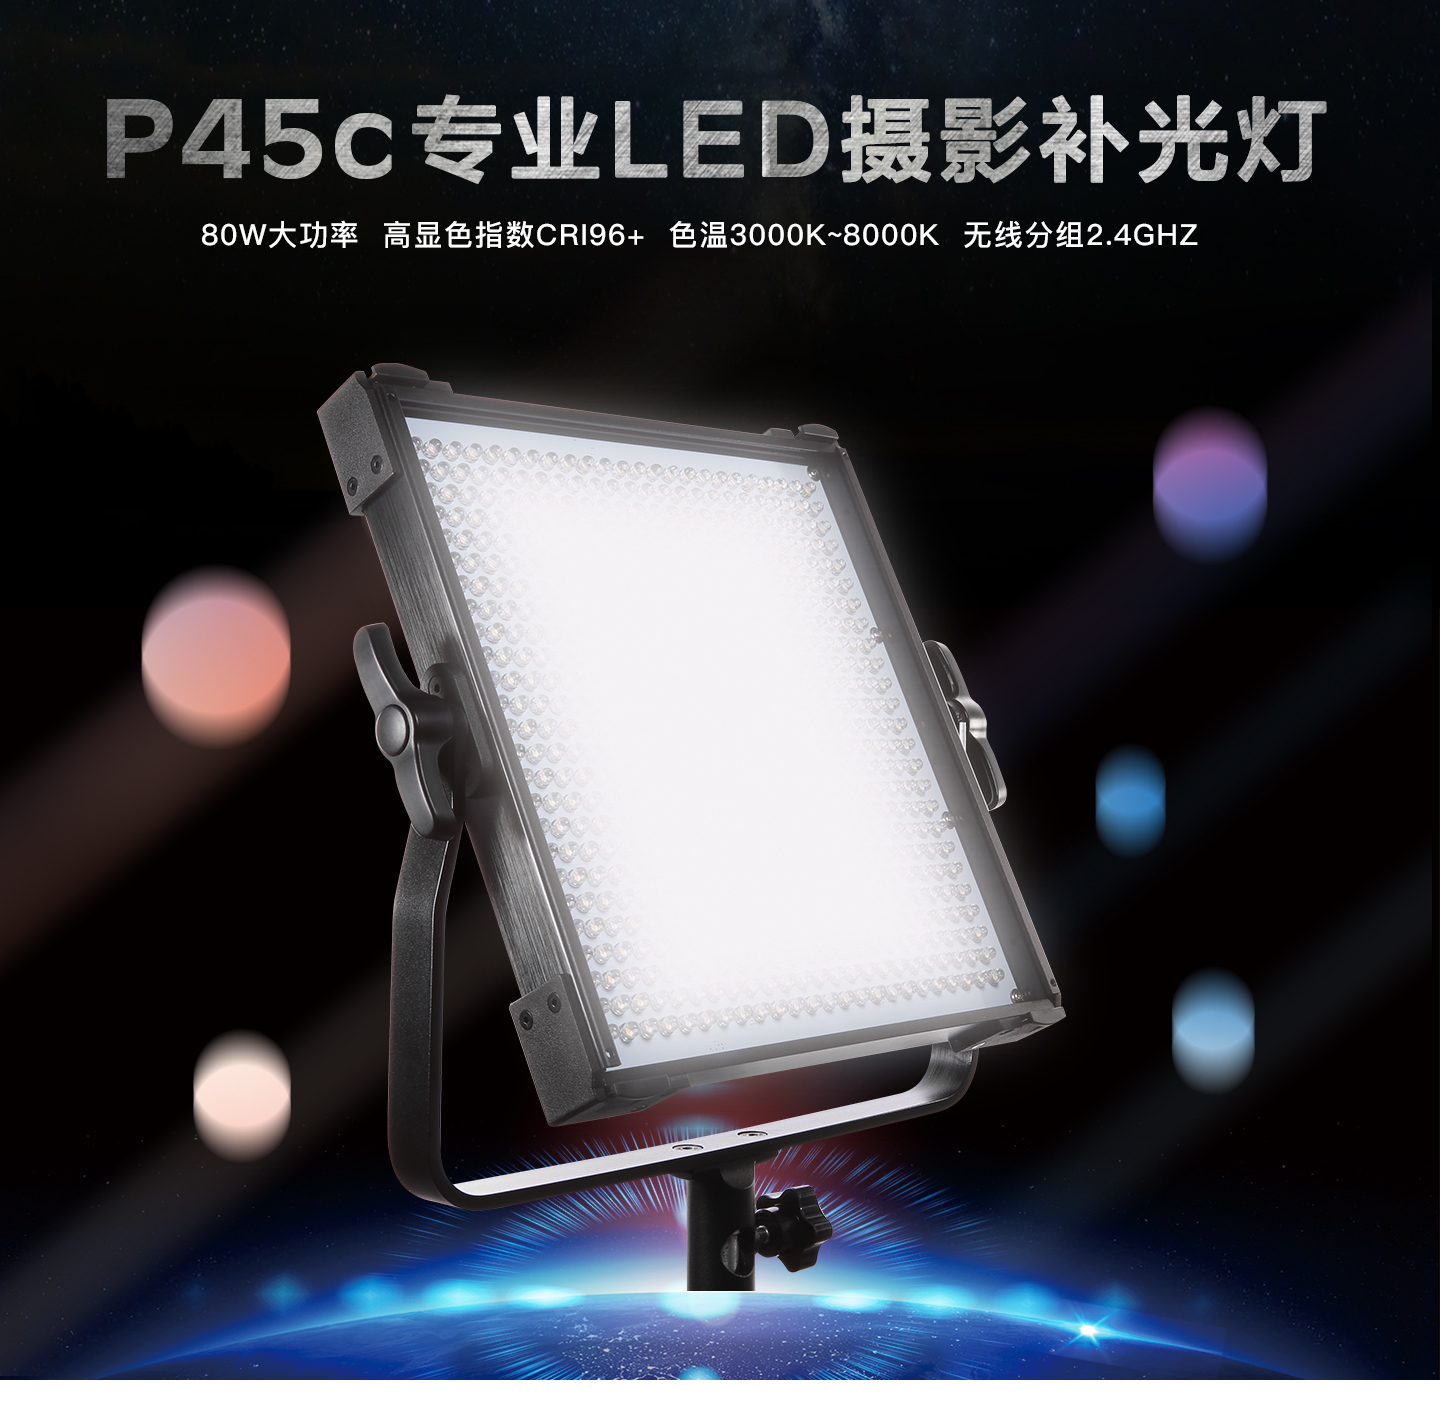 P45c专业LED摄影补光灯